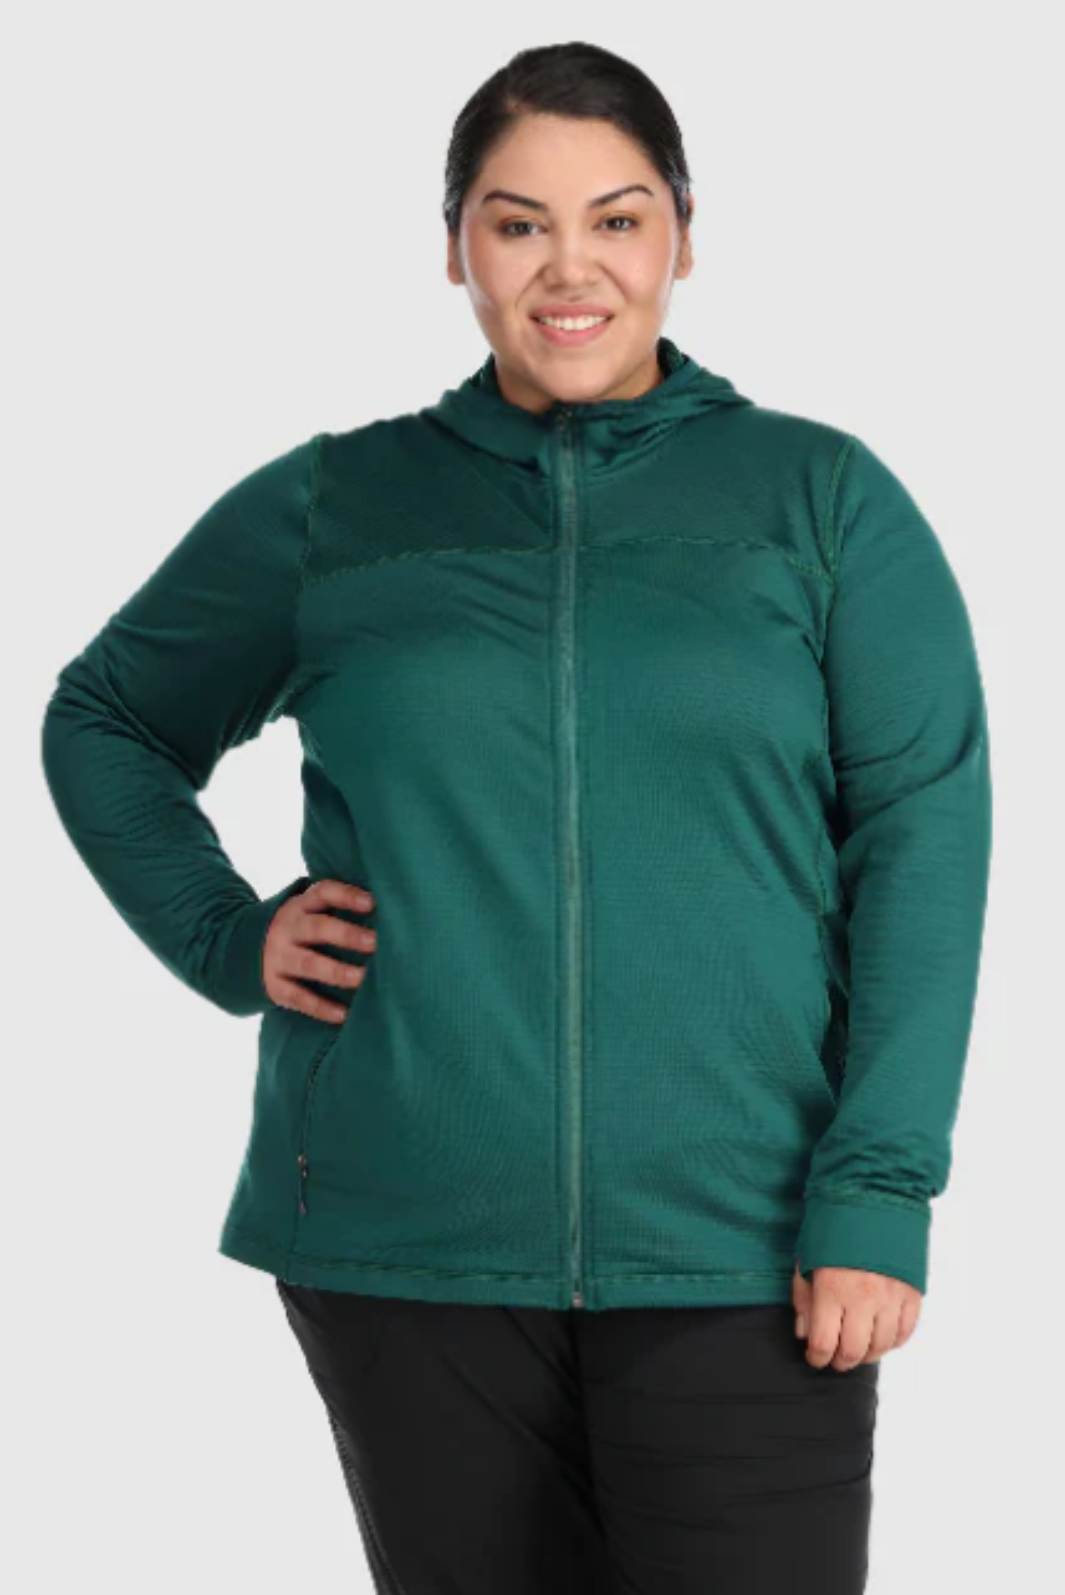 Outdoor Research Vigor Plus Fleece Jacket - Women's